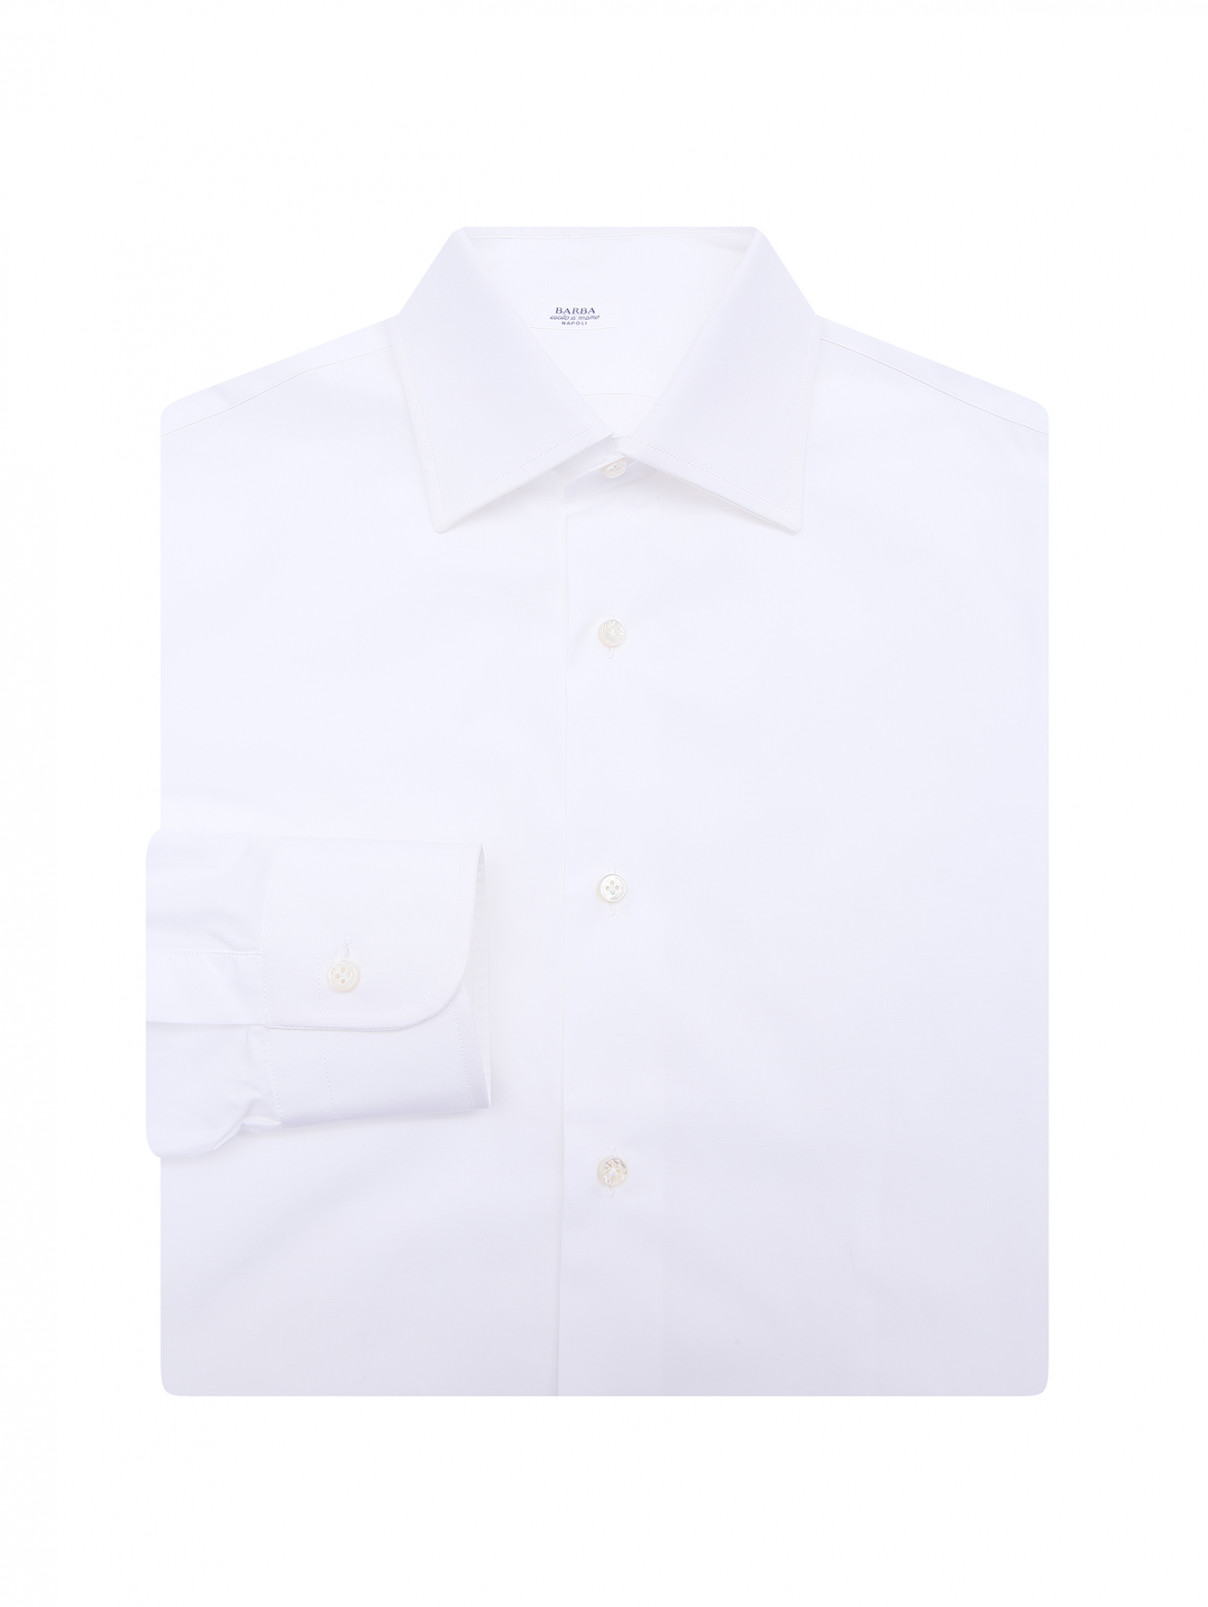 Приталенная классическая рубашка Barba Napoli  –  Общий вид  – Цвет:  Белый